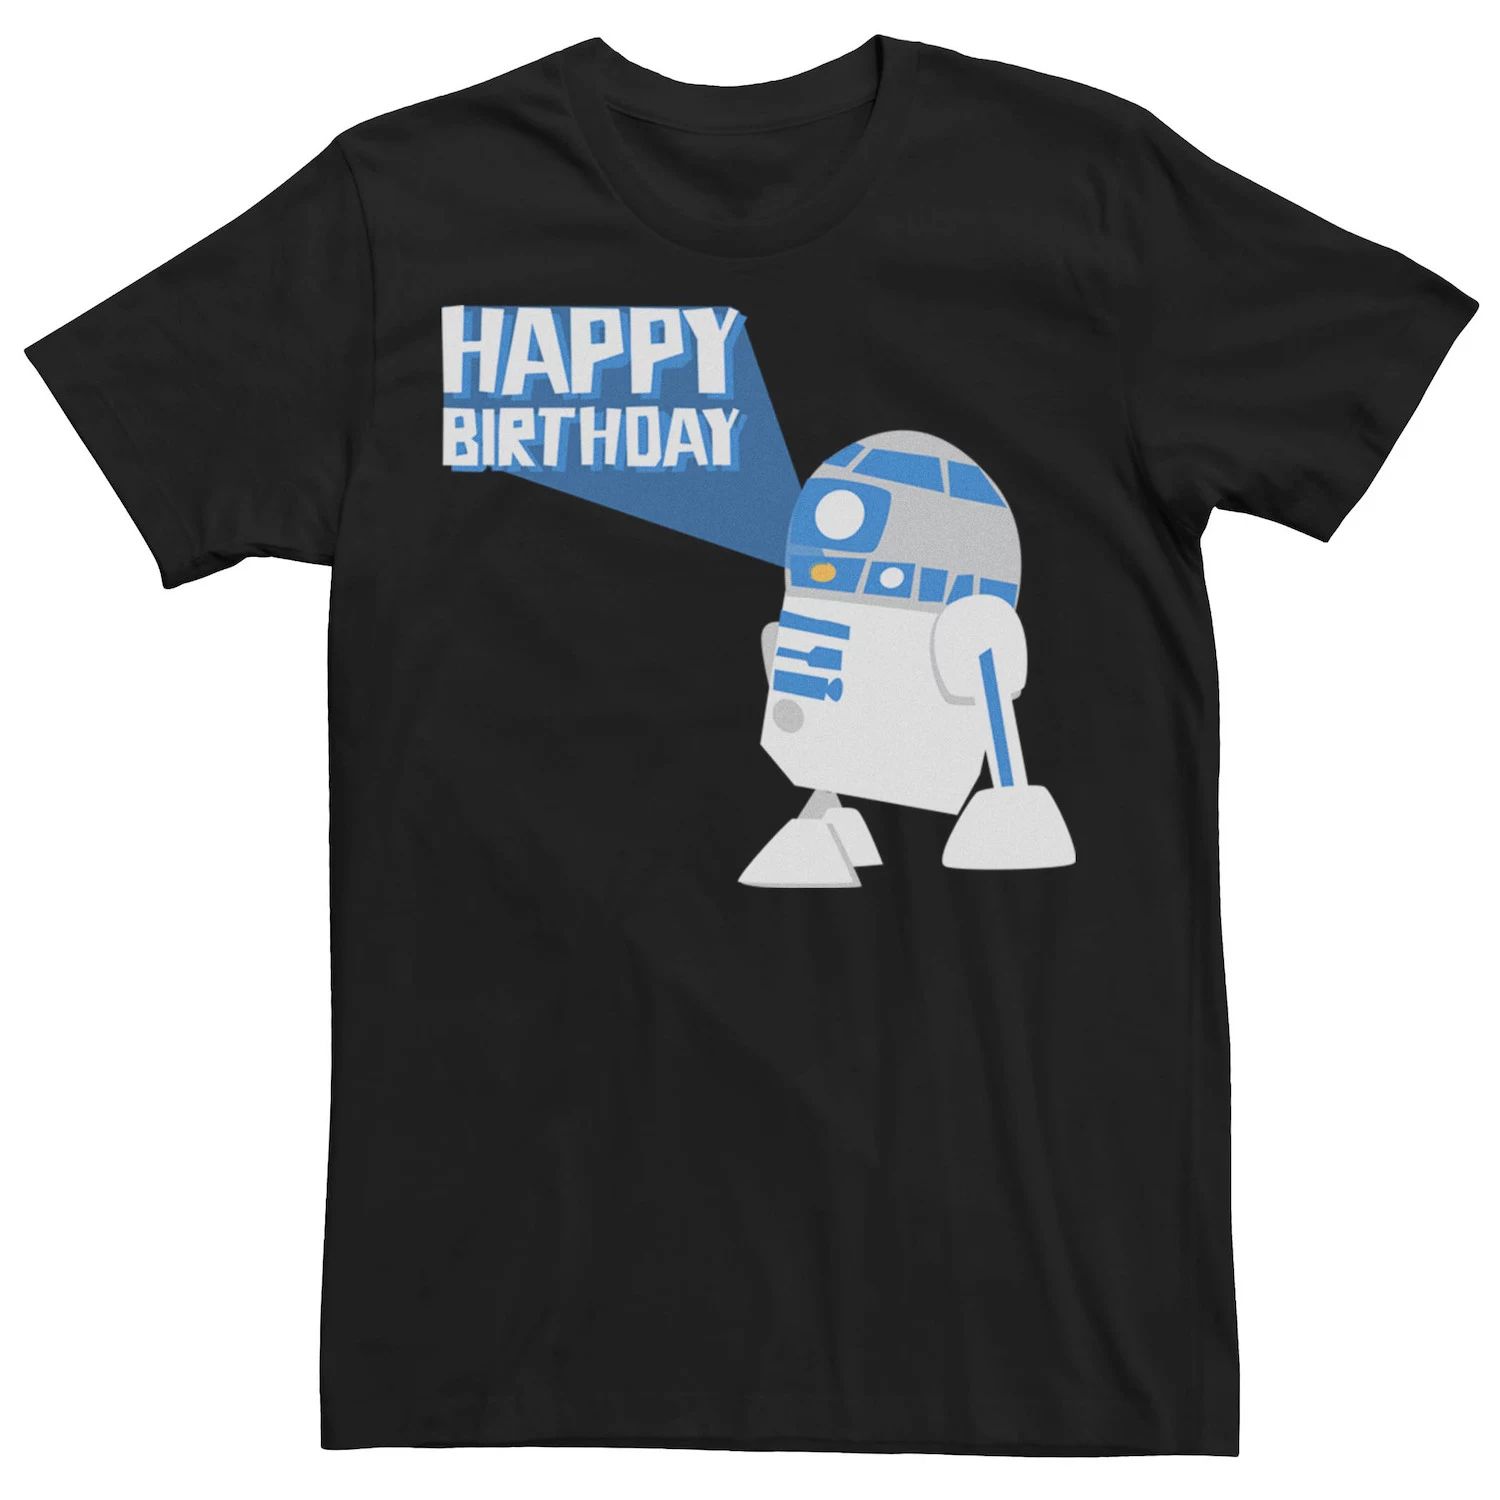 Мужская футболка с наклейкой на день рождения R2 Star Wars мужская футболка день рождения белый контур m зеленый